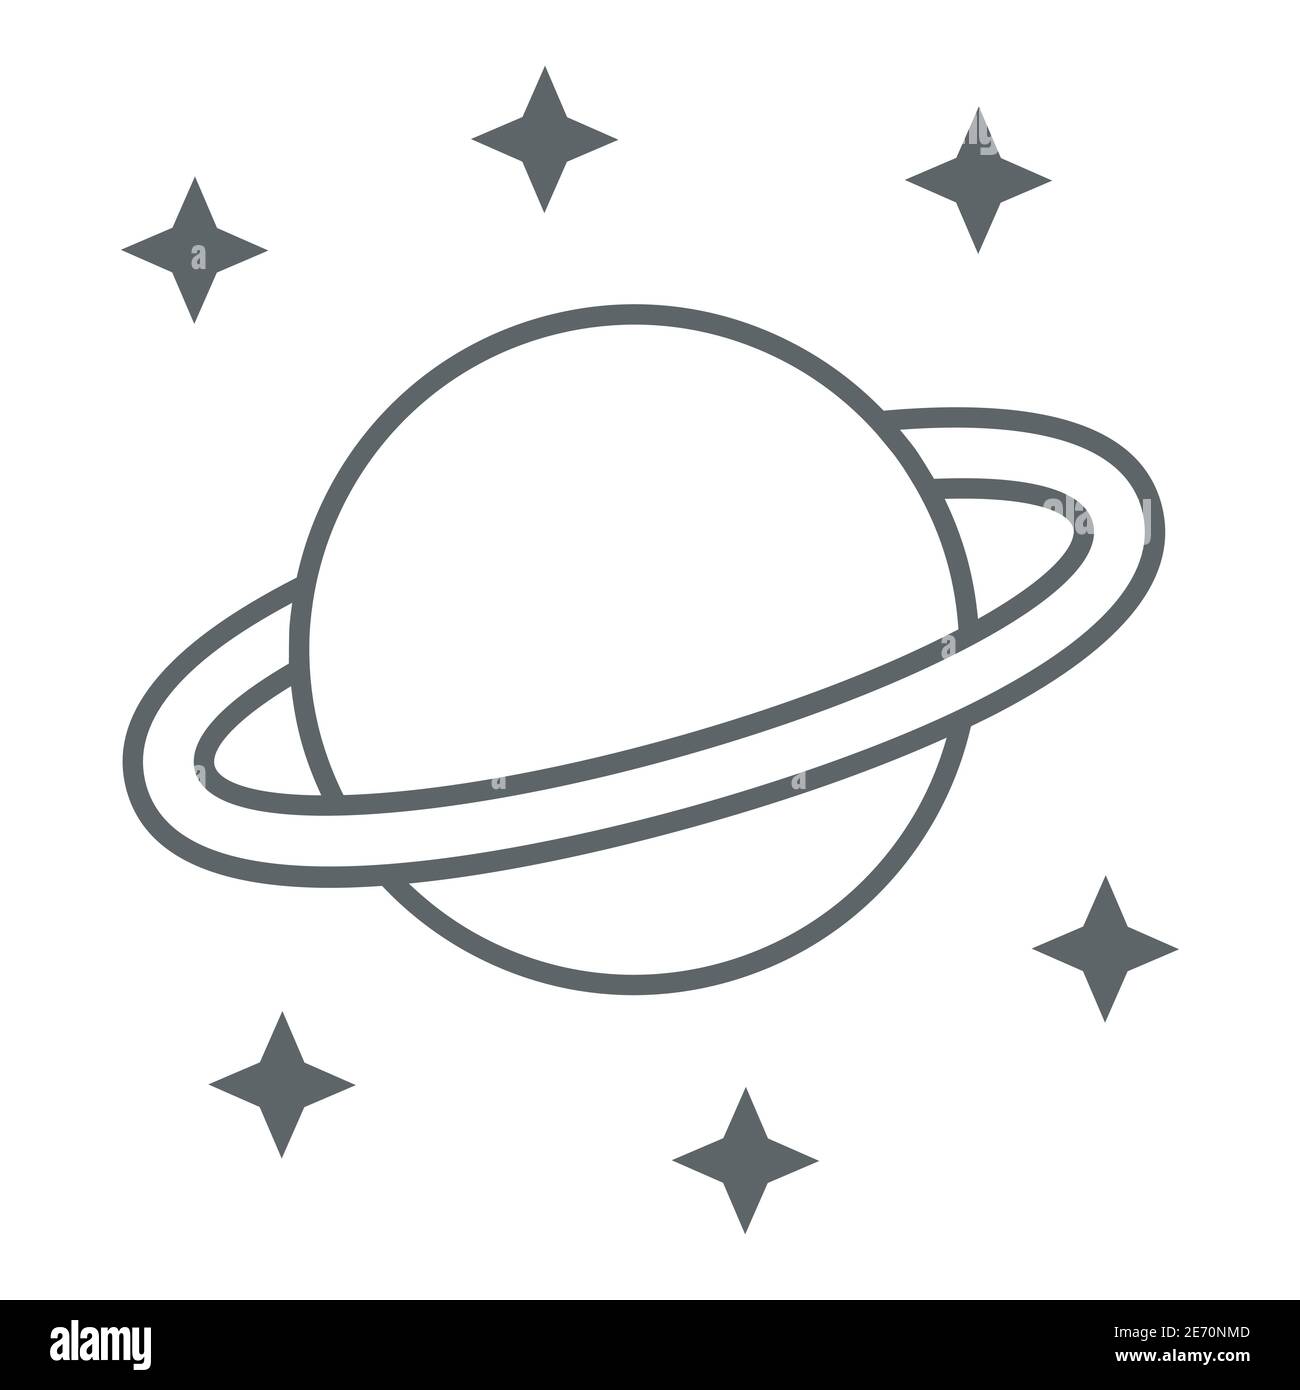 Icona linea sottile Planet Saturn, concetto di spazio, segno pianeta e stelle su sfondo bianco, Saturno con icona sistema ad anello planetario in stile contorno per Illustrazione Vettoriale